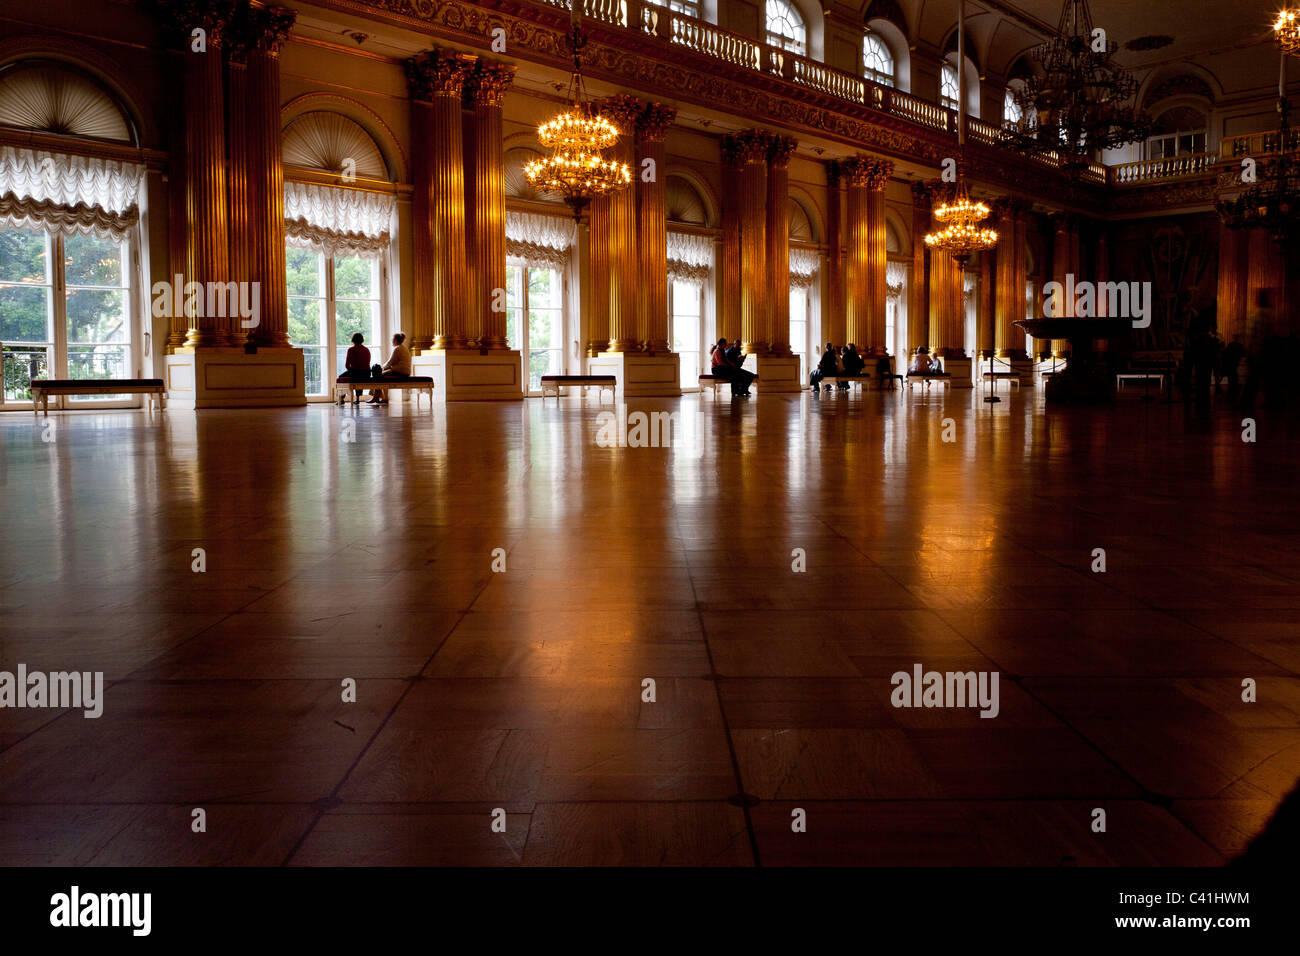 La grande salle de bal - Palais d'hiver - St Petersburg Photo Stock - Alamy